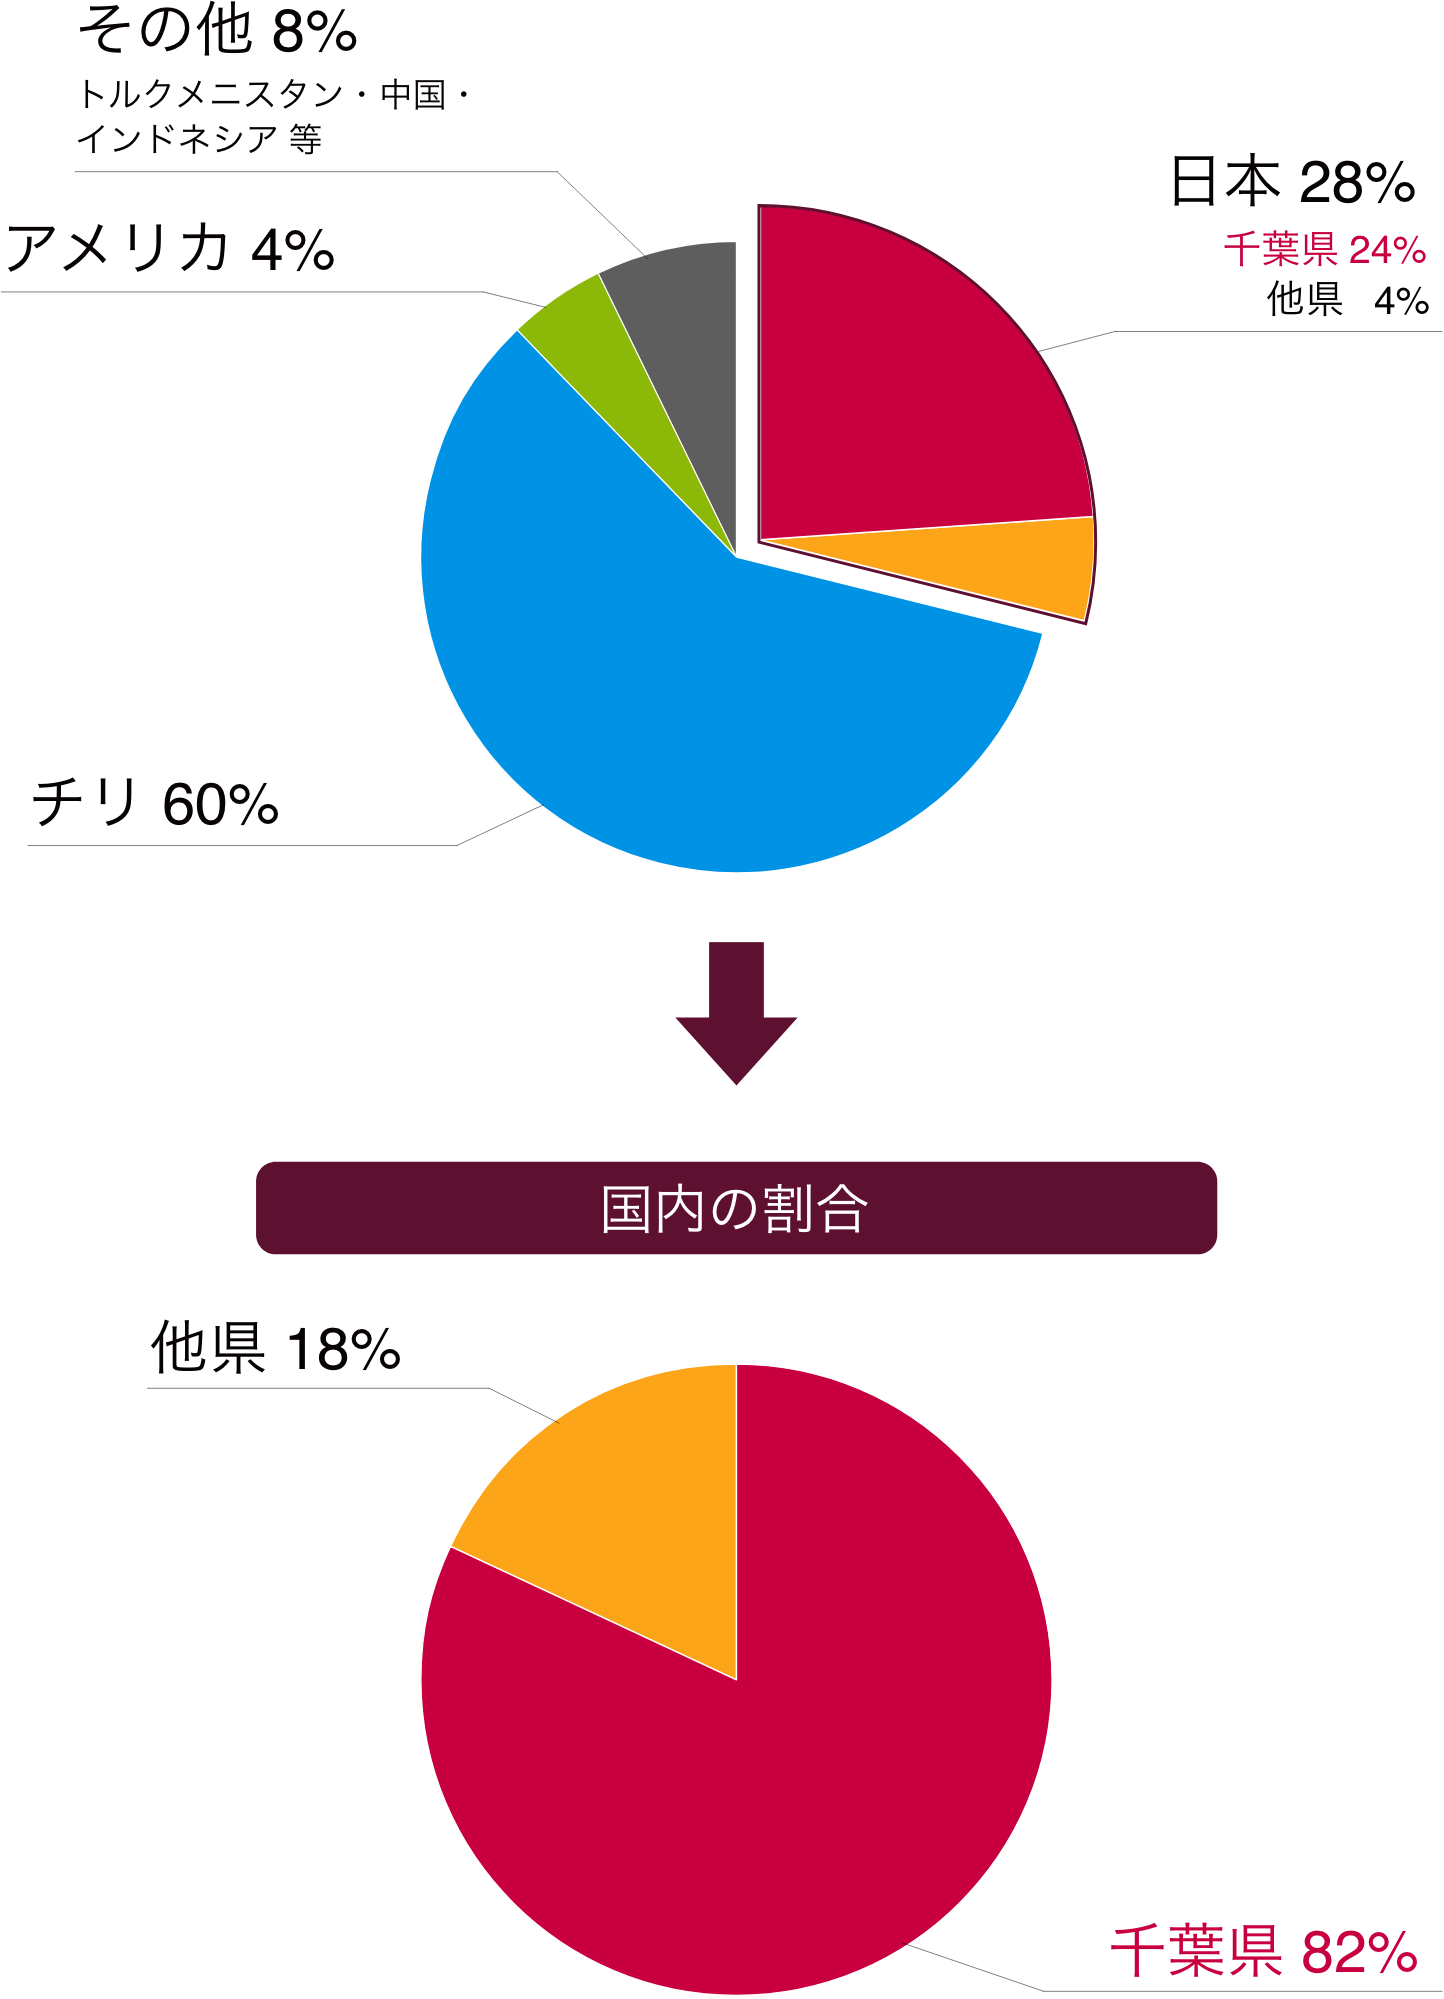 図）ヨウ素の世界におけるシェアと日本国内での割合